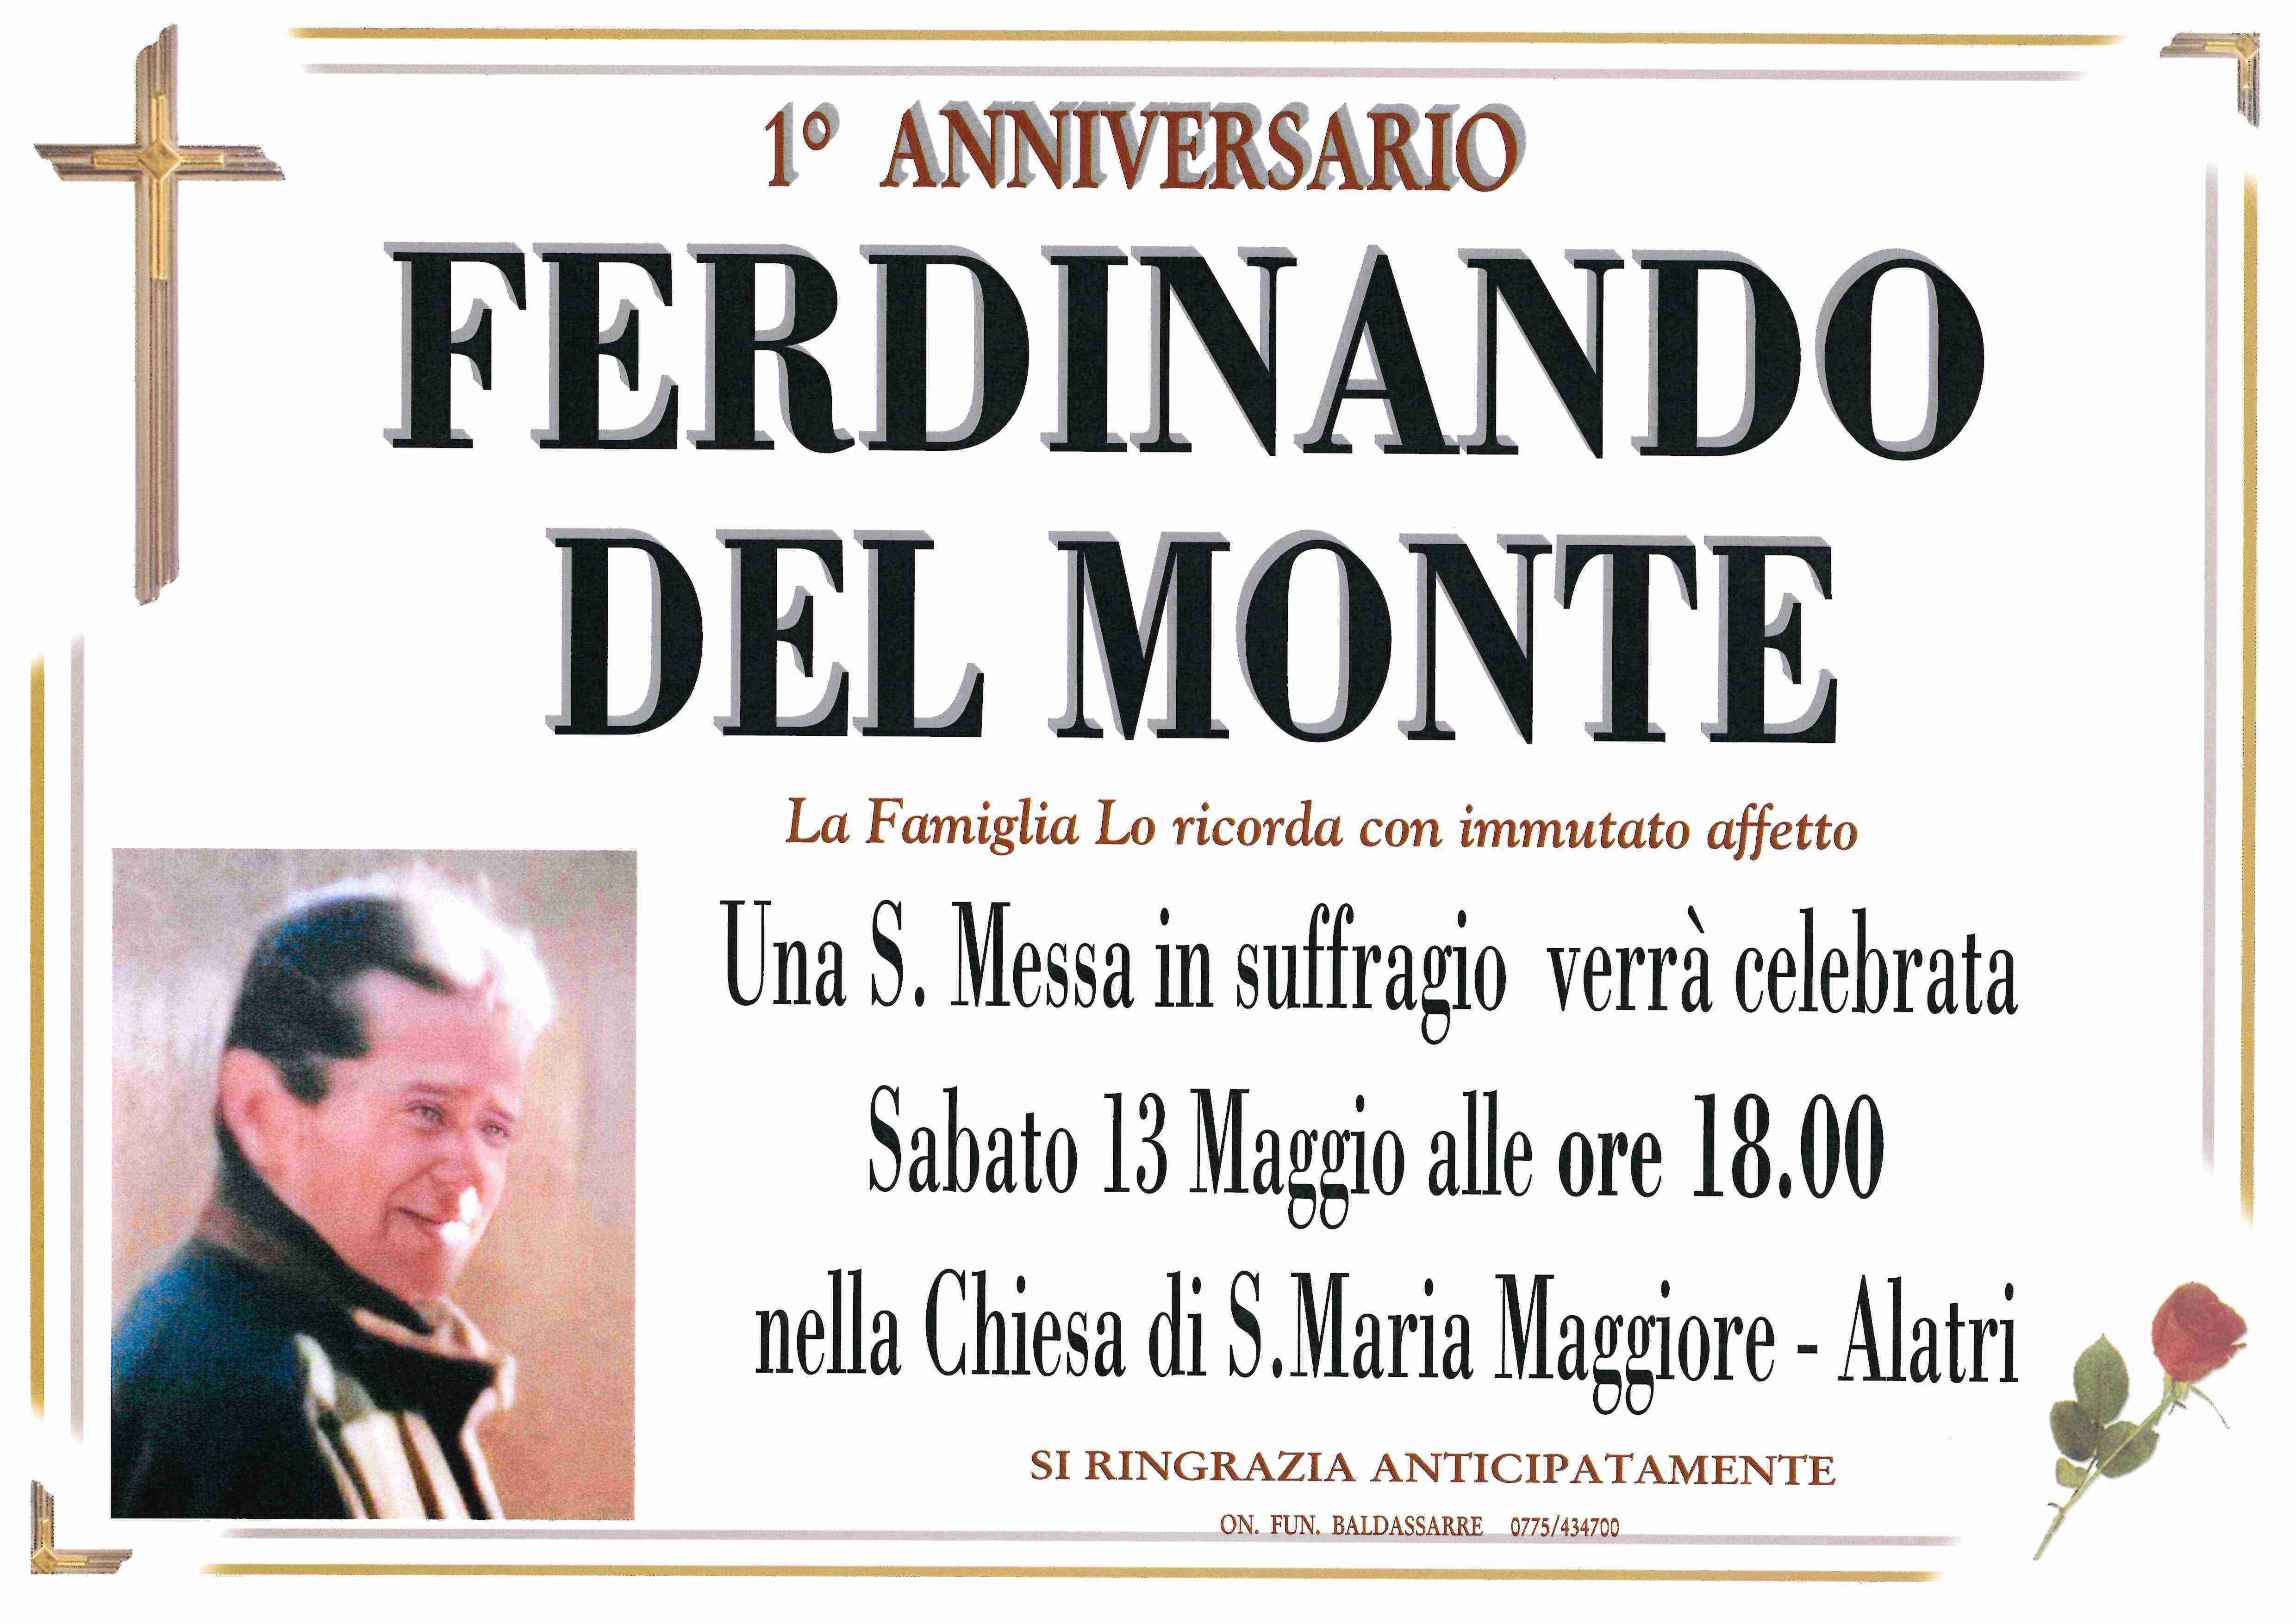 Ferdinando Del Monte